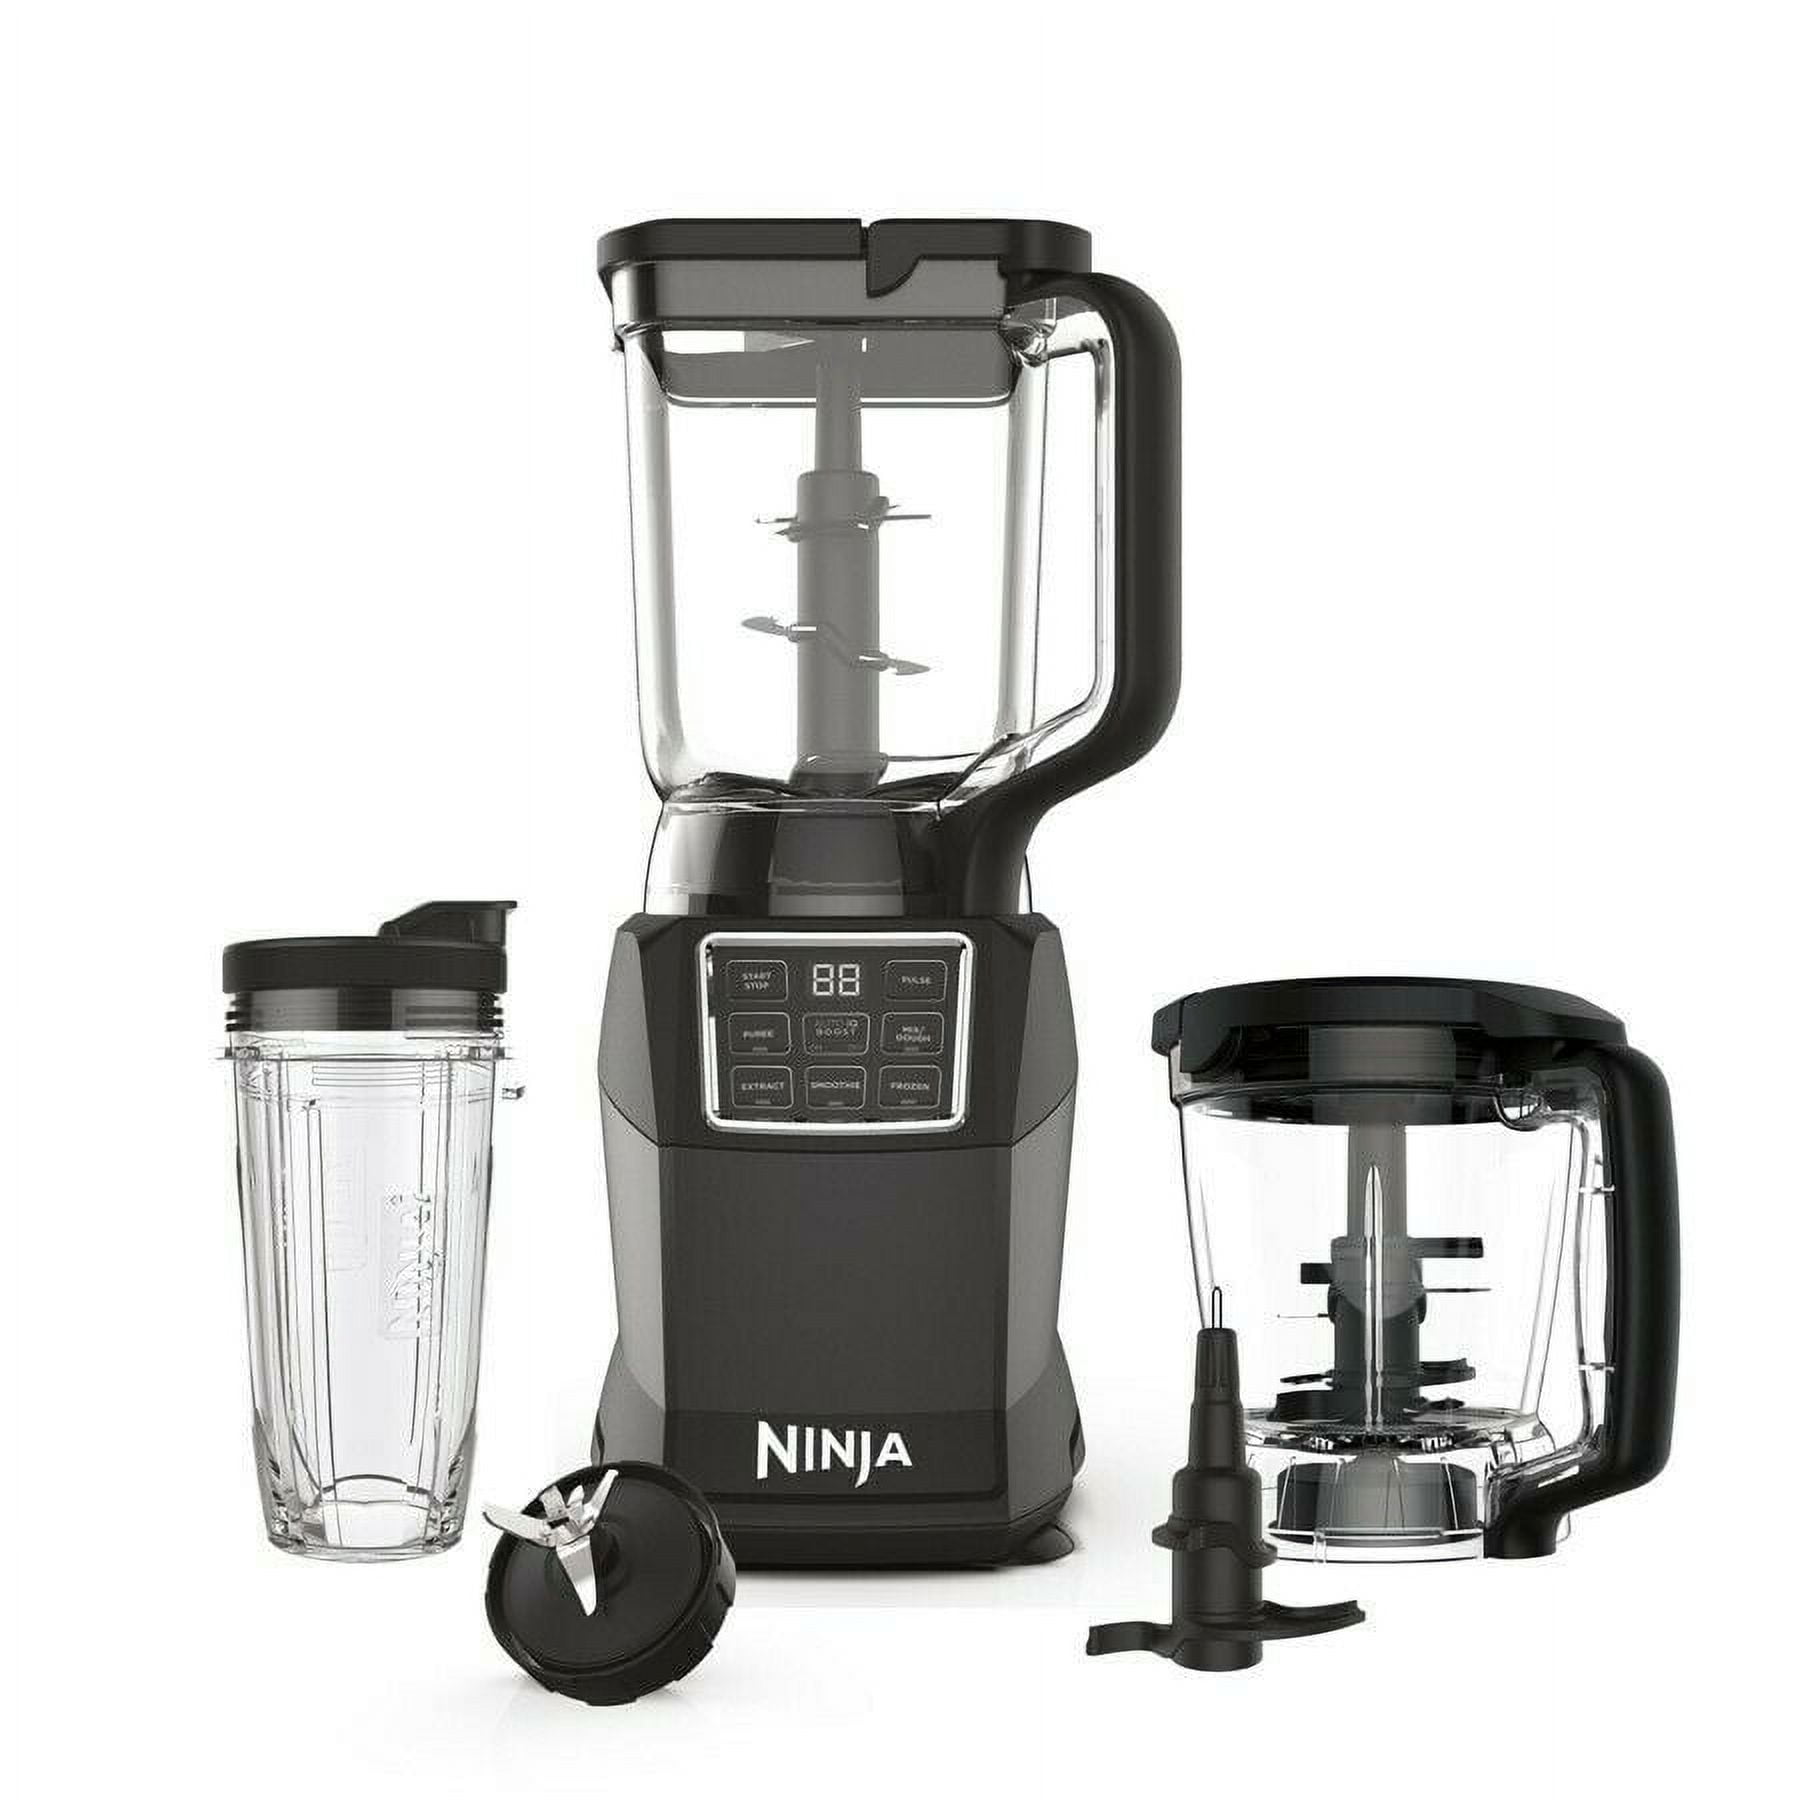 Ninja Blender Kitchen System w/Auto-iQ 1500W and Accessories